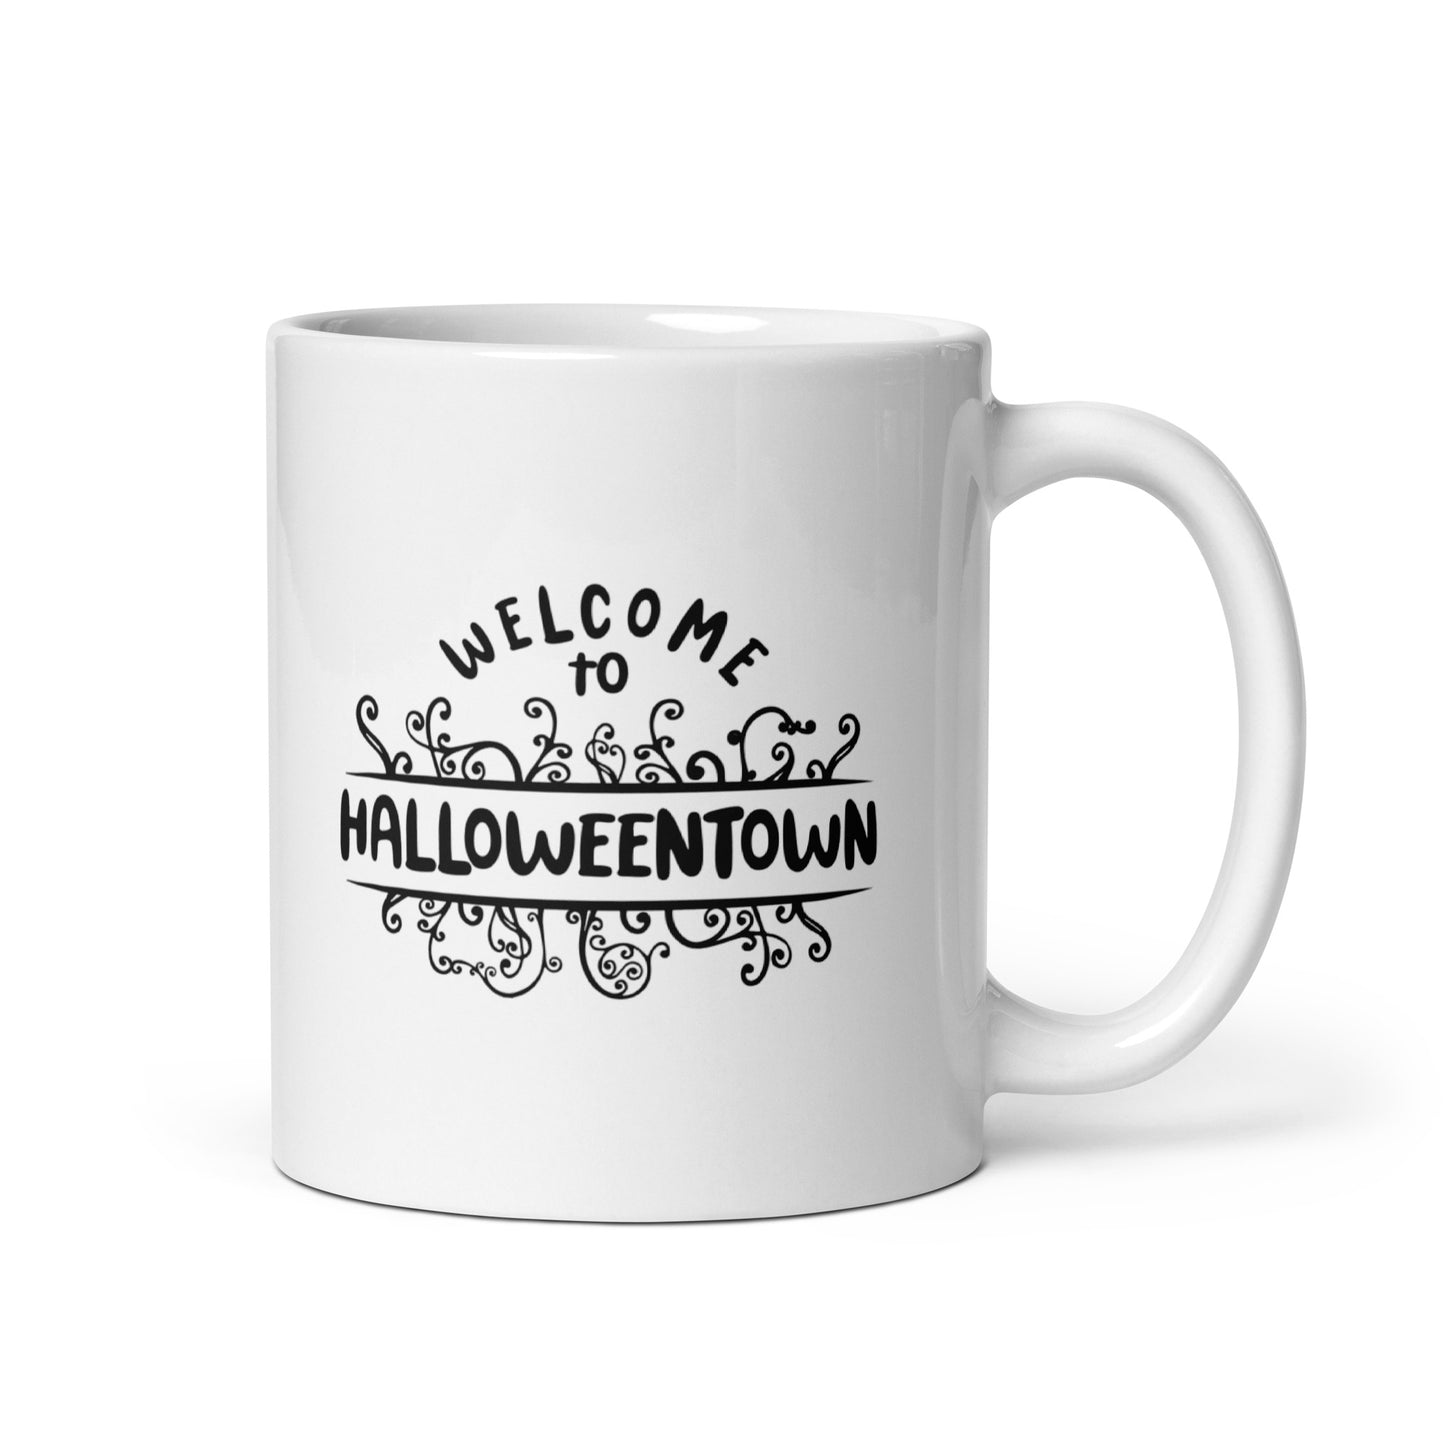 Halloweentown Mug